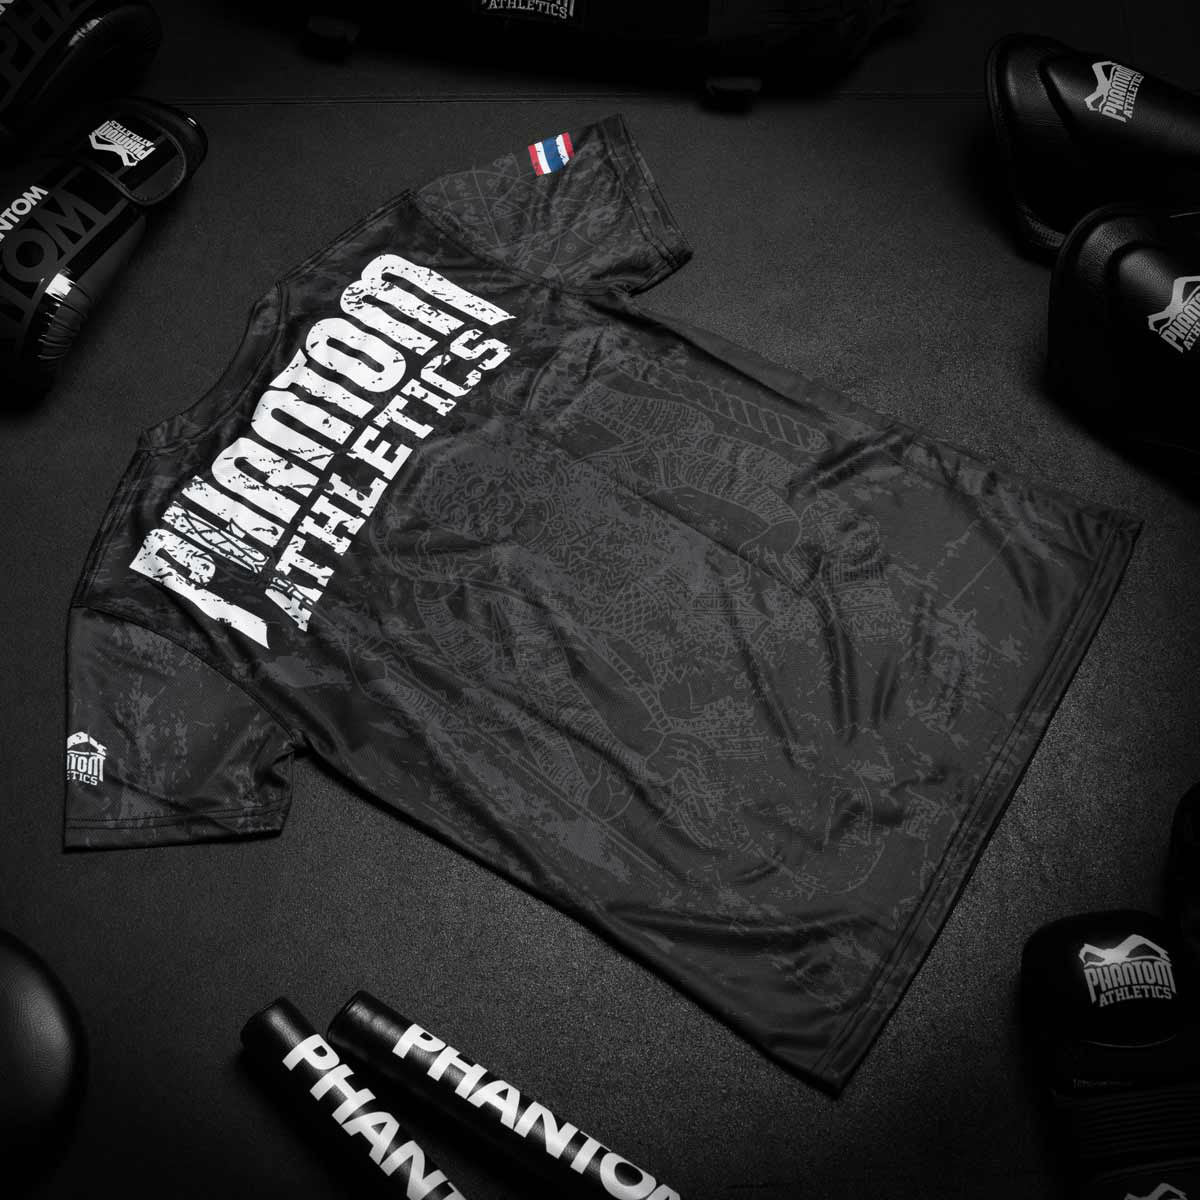 Phantom EVO Trainingsshirt im Muay Thai Design für Kampfsport Training. Mit thailändischer Schrift und Sak Yant Grafiken. Hochwertiger Sublimationsdruck für eine lange Lebensdauer.